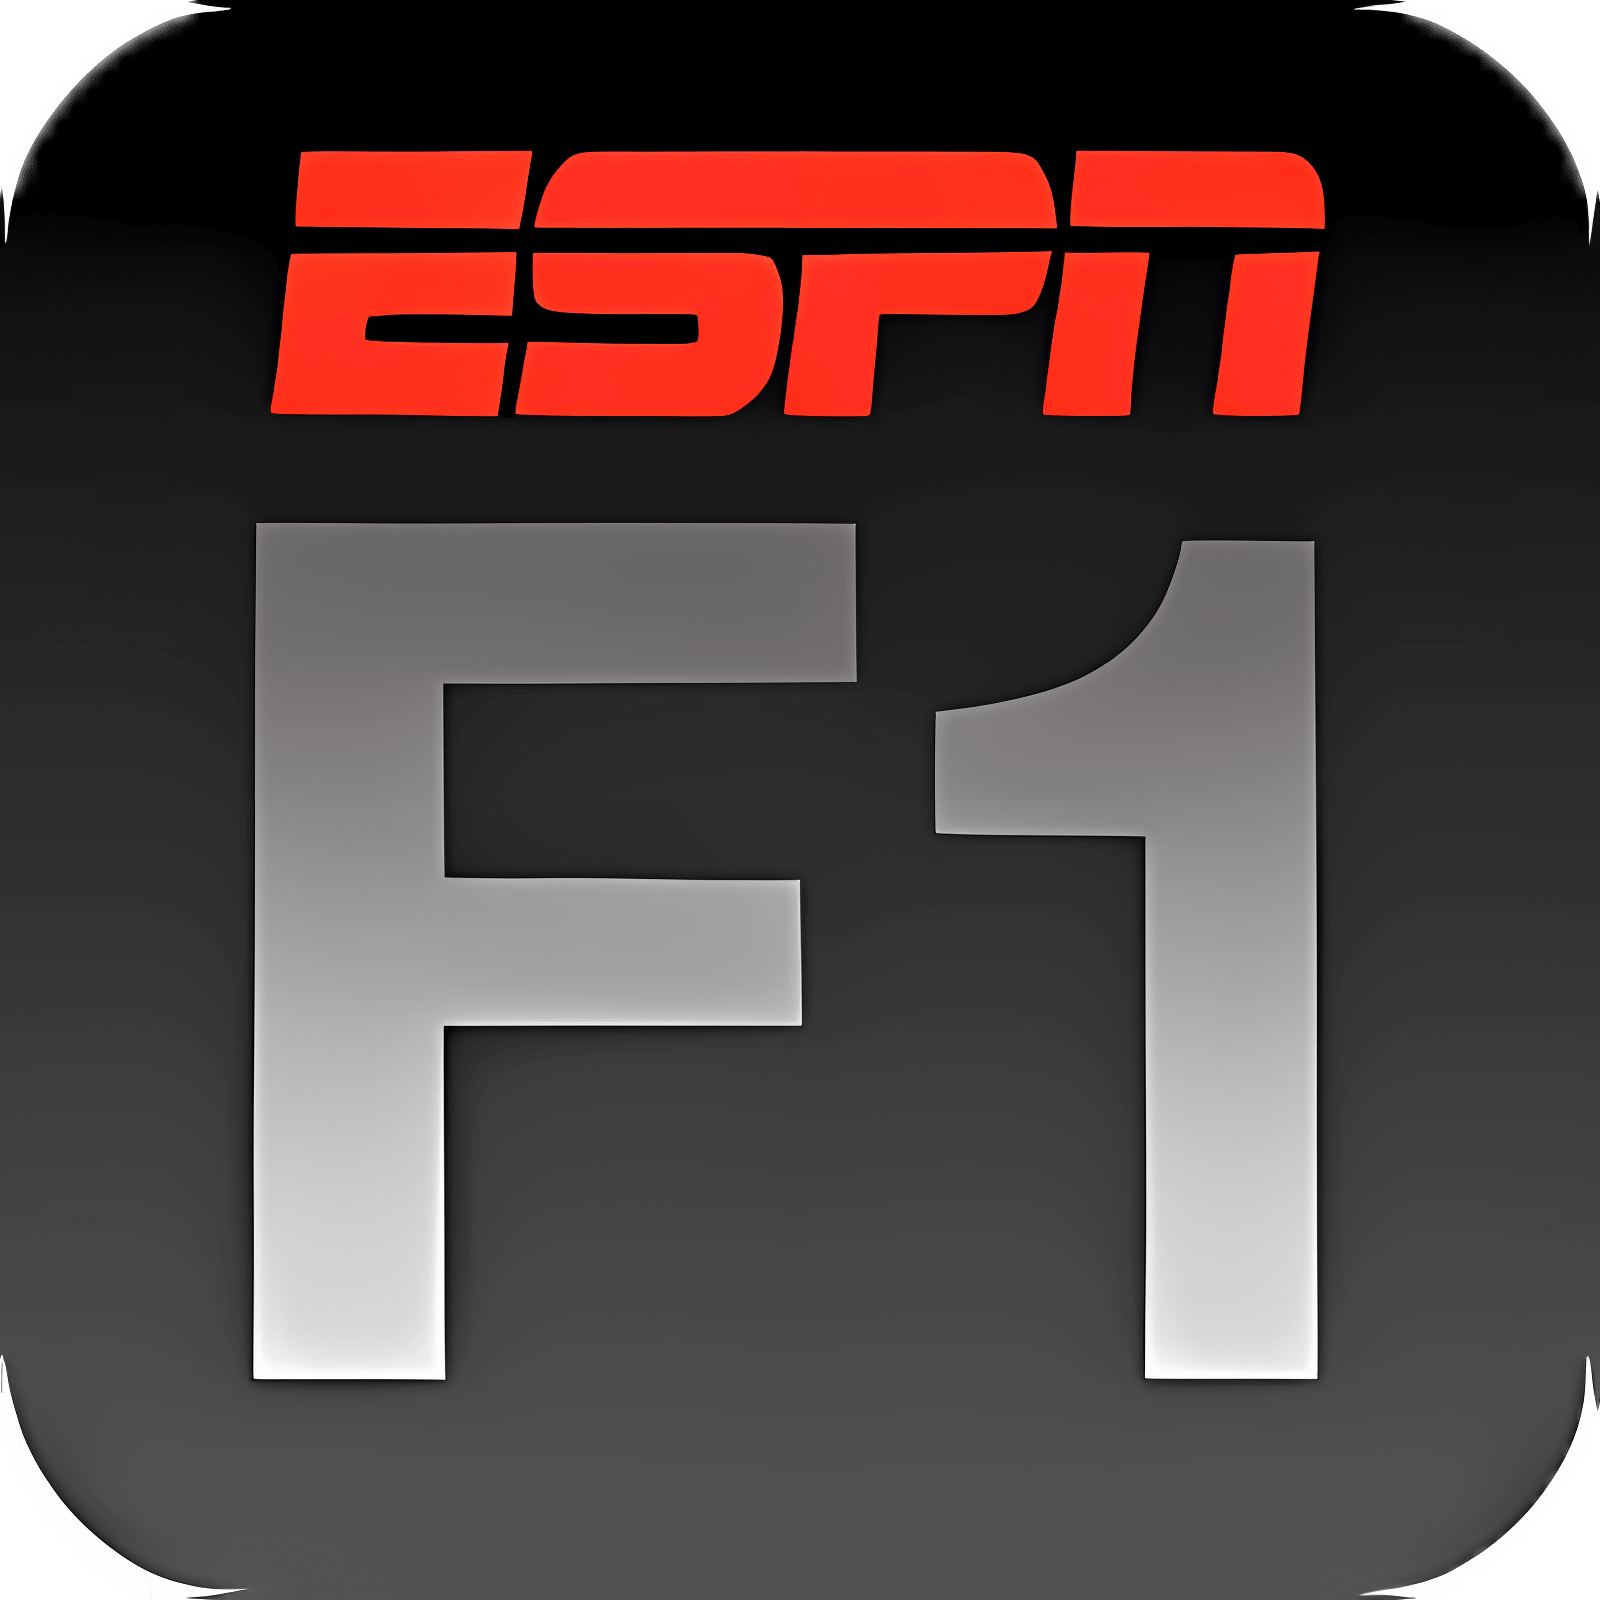 下载 ESPNF1 安装 最新 App 下载程序